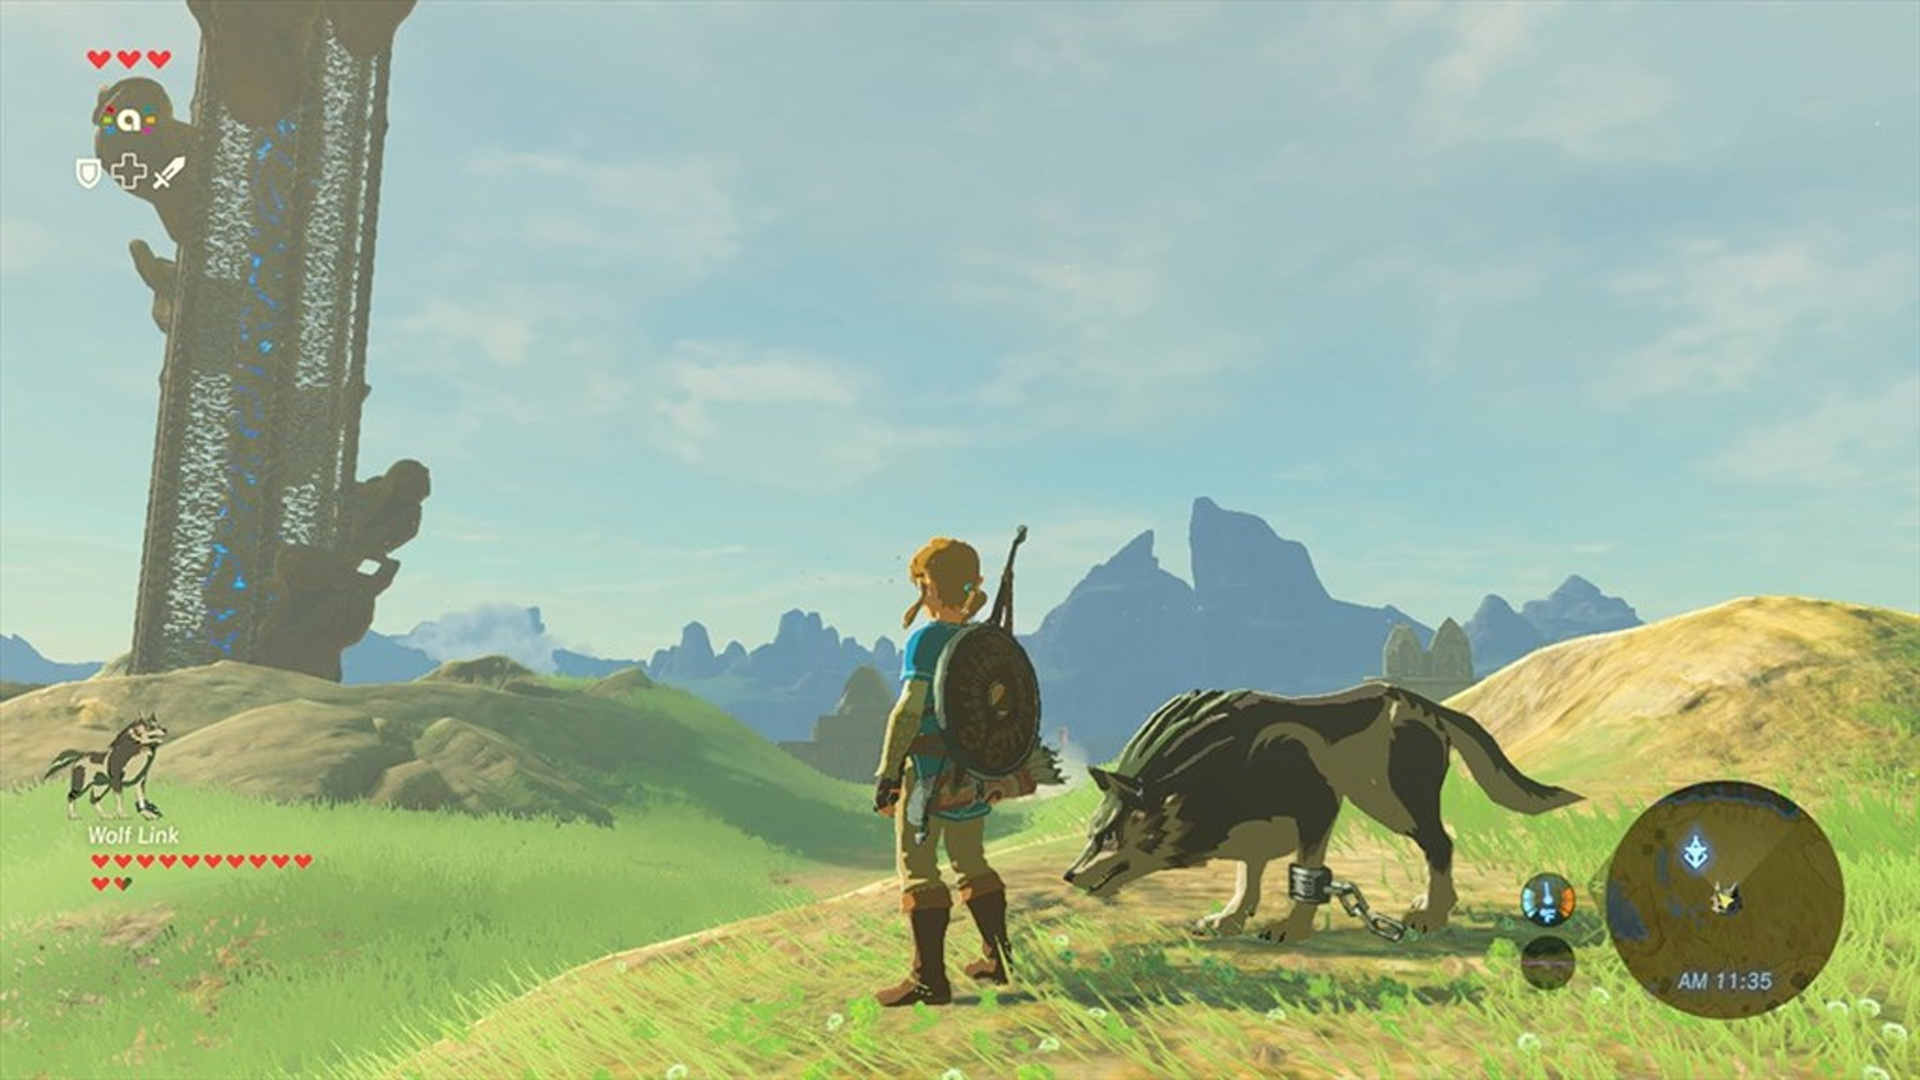 The Legend of Zelda: Breath of the Wild is Releasing on WiiU